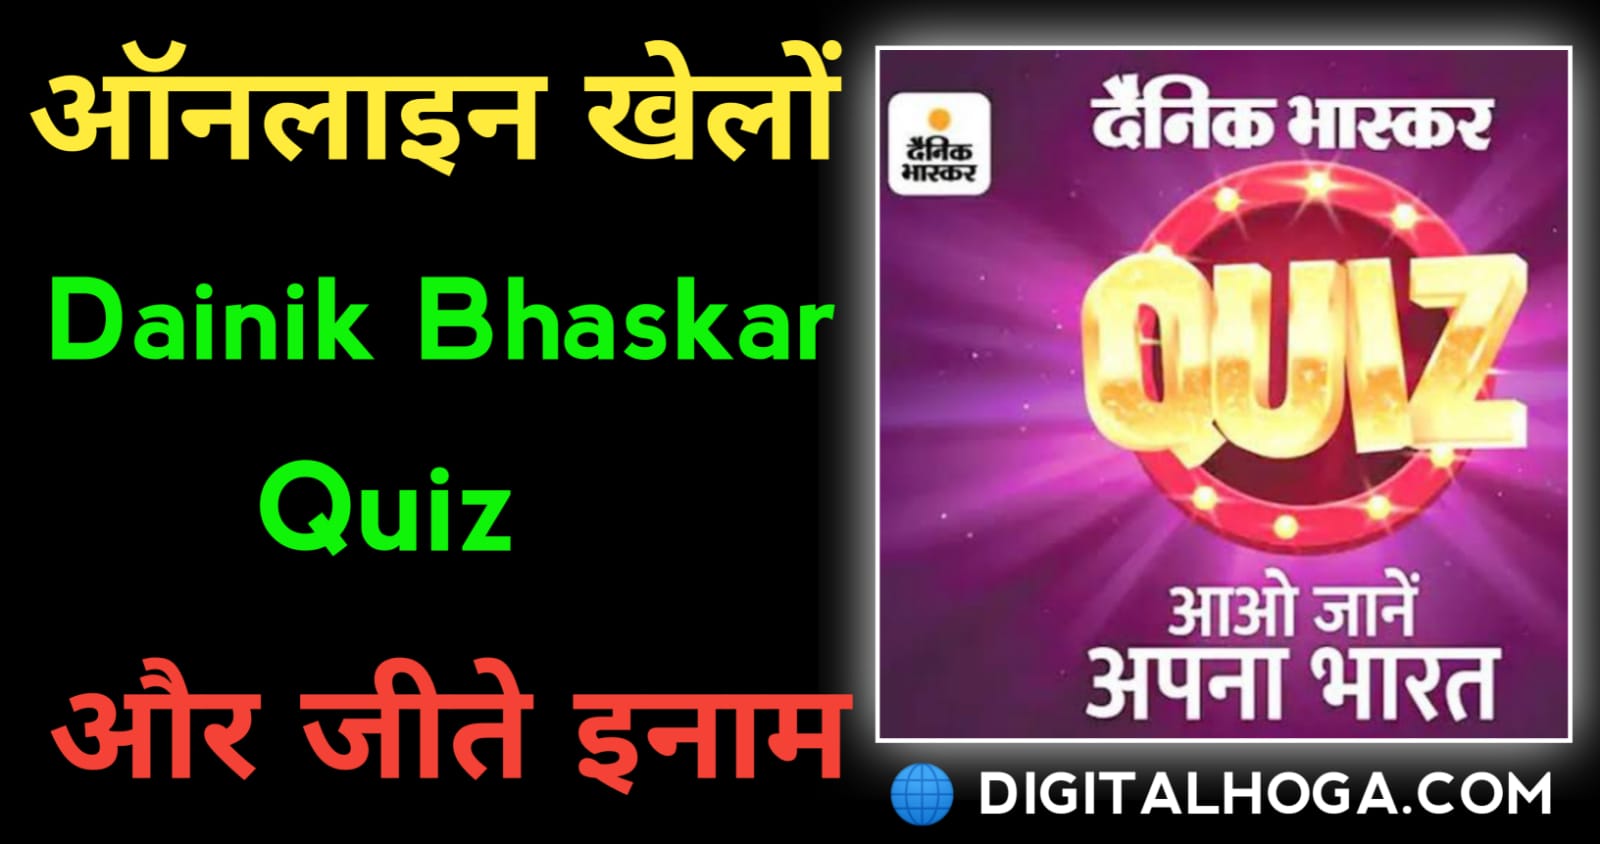 dainik bhaskar quiz kaise khele